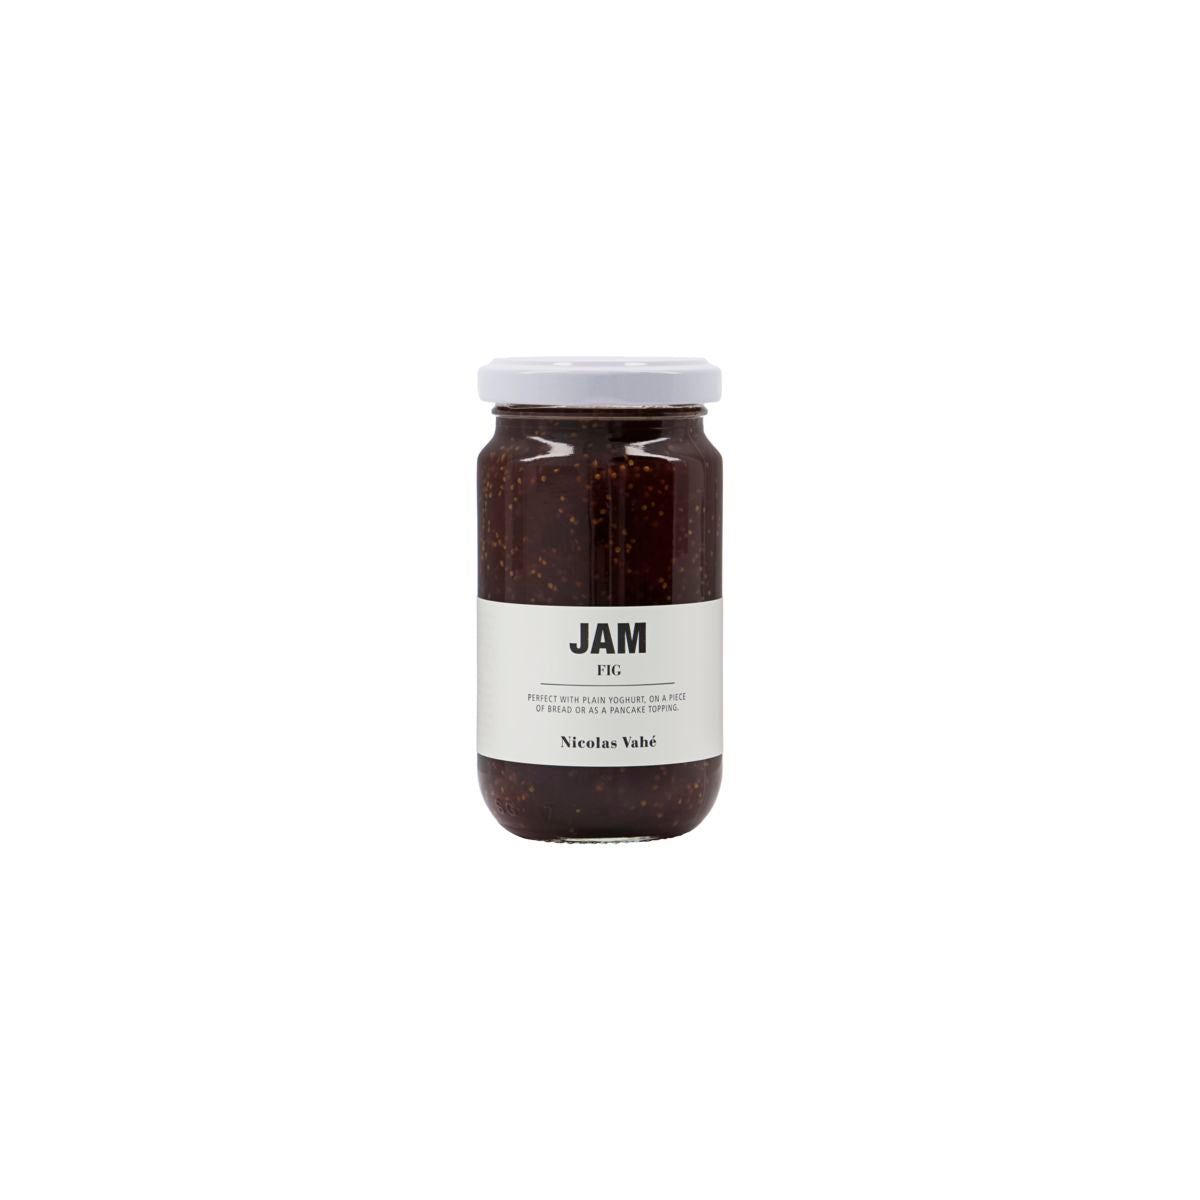 Jam - Fig